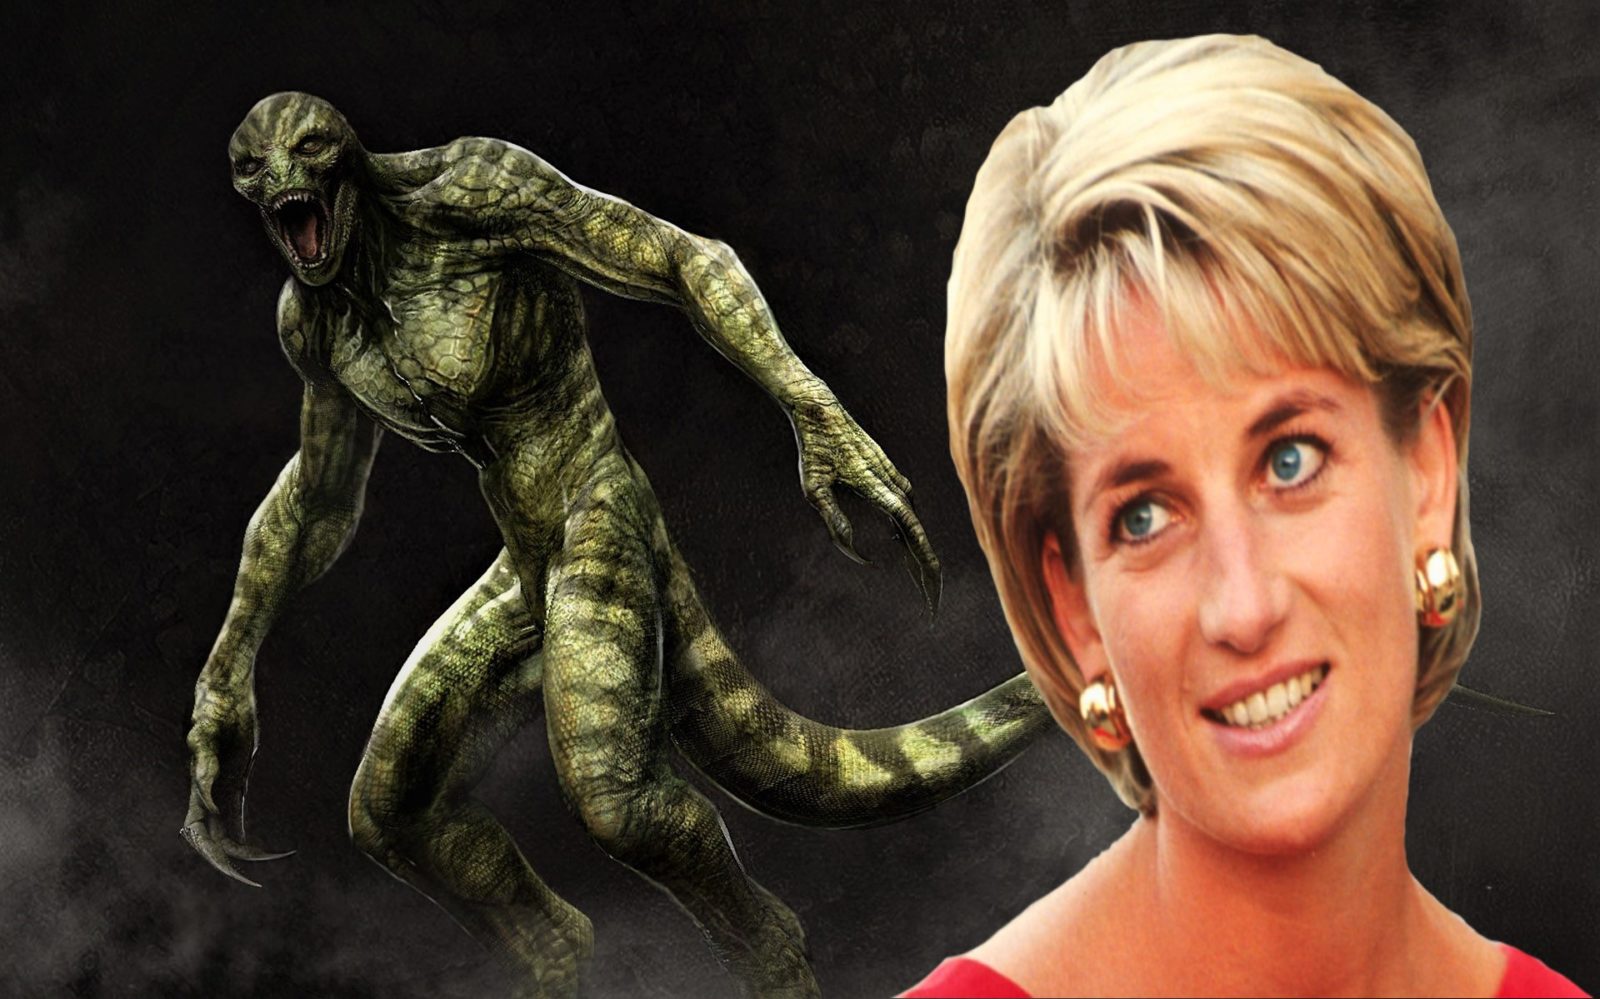 La princesa Diana expuso la Agenda Reptiliana y fue Eliminada (Video)